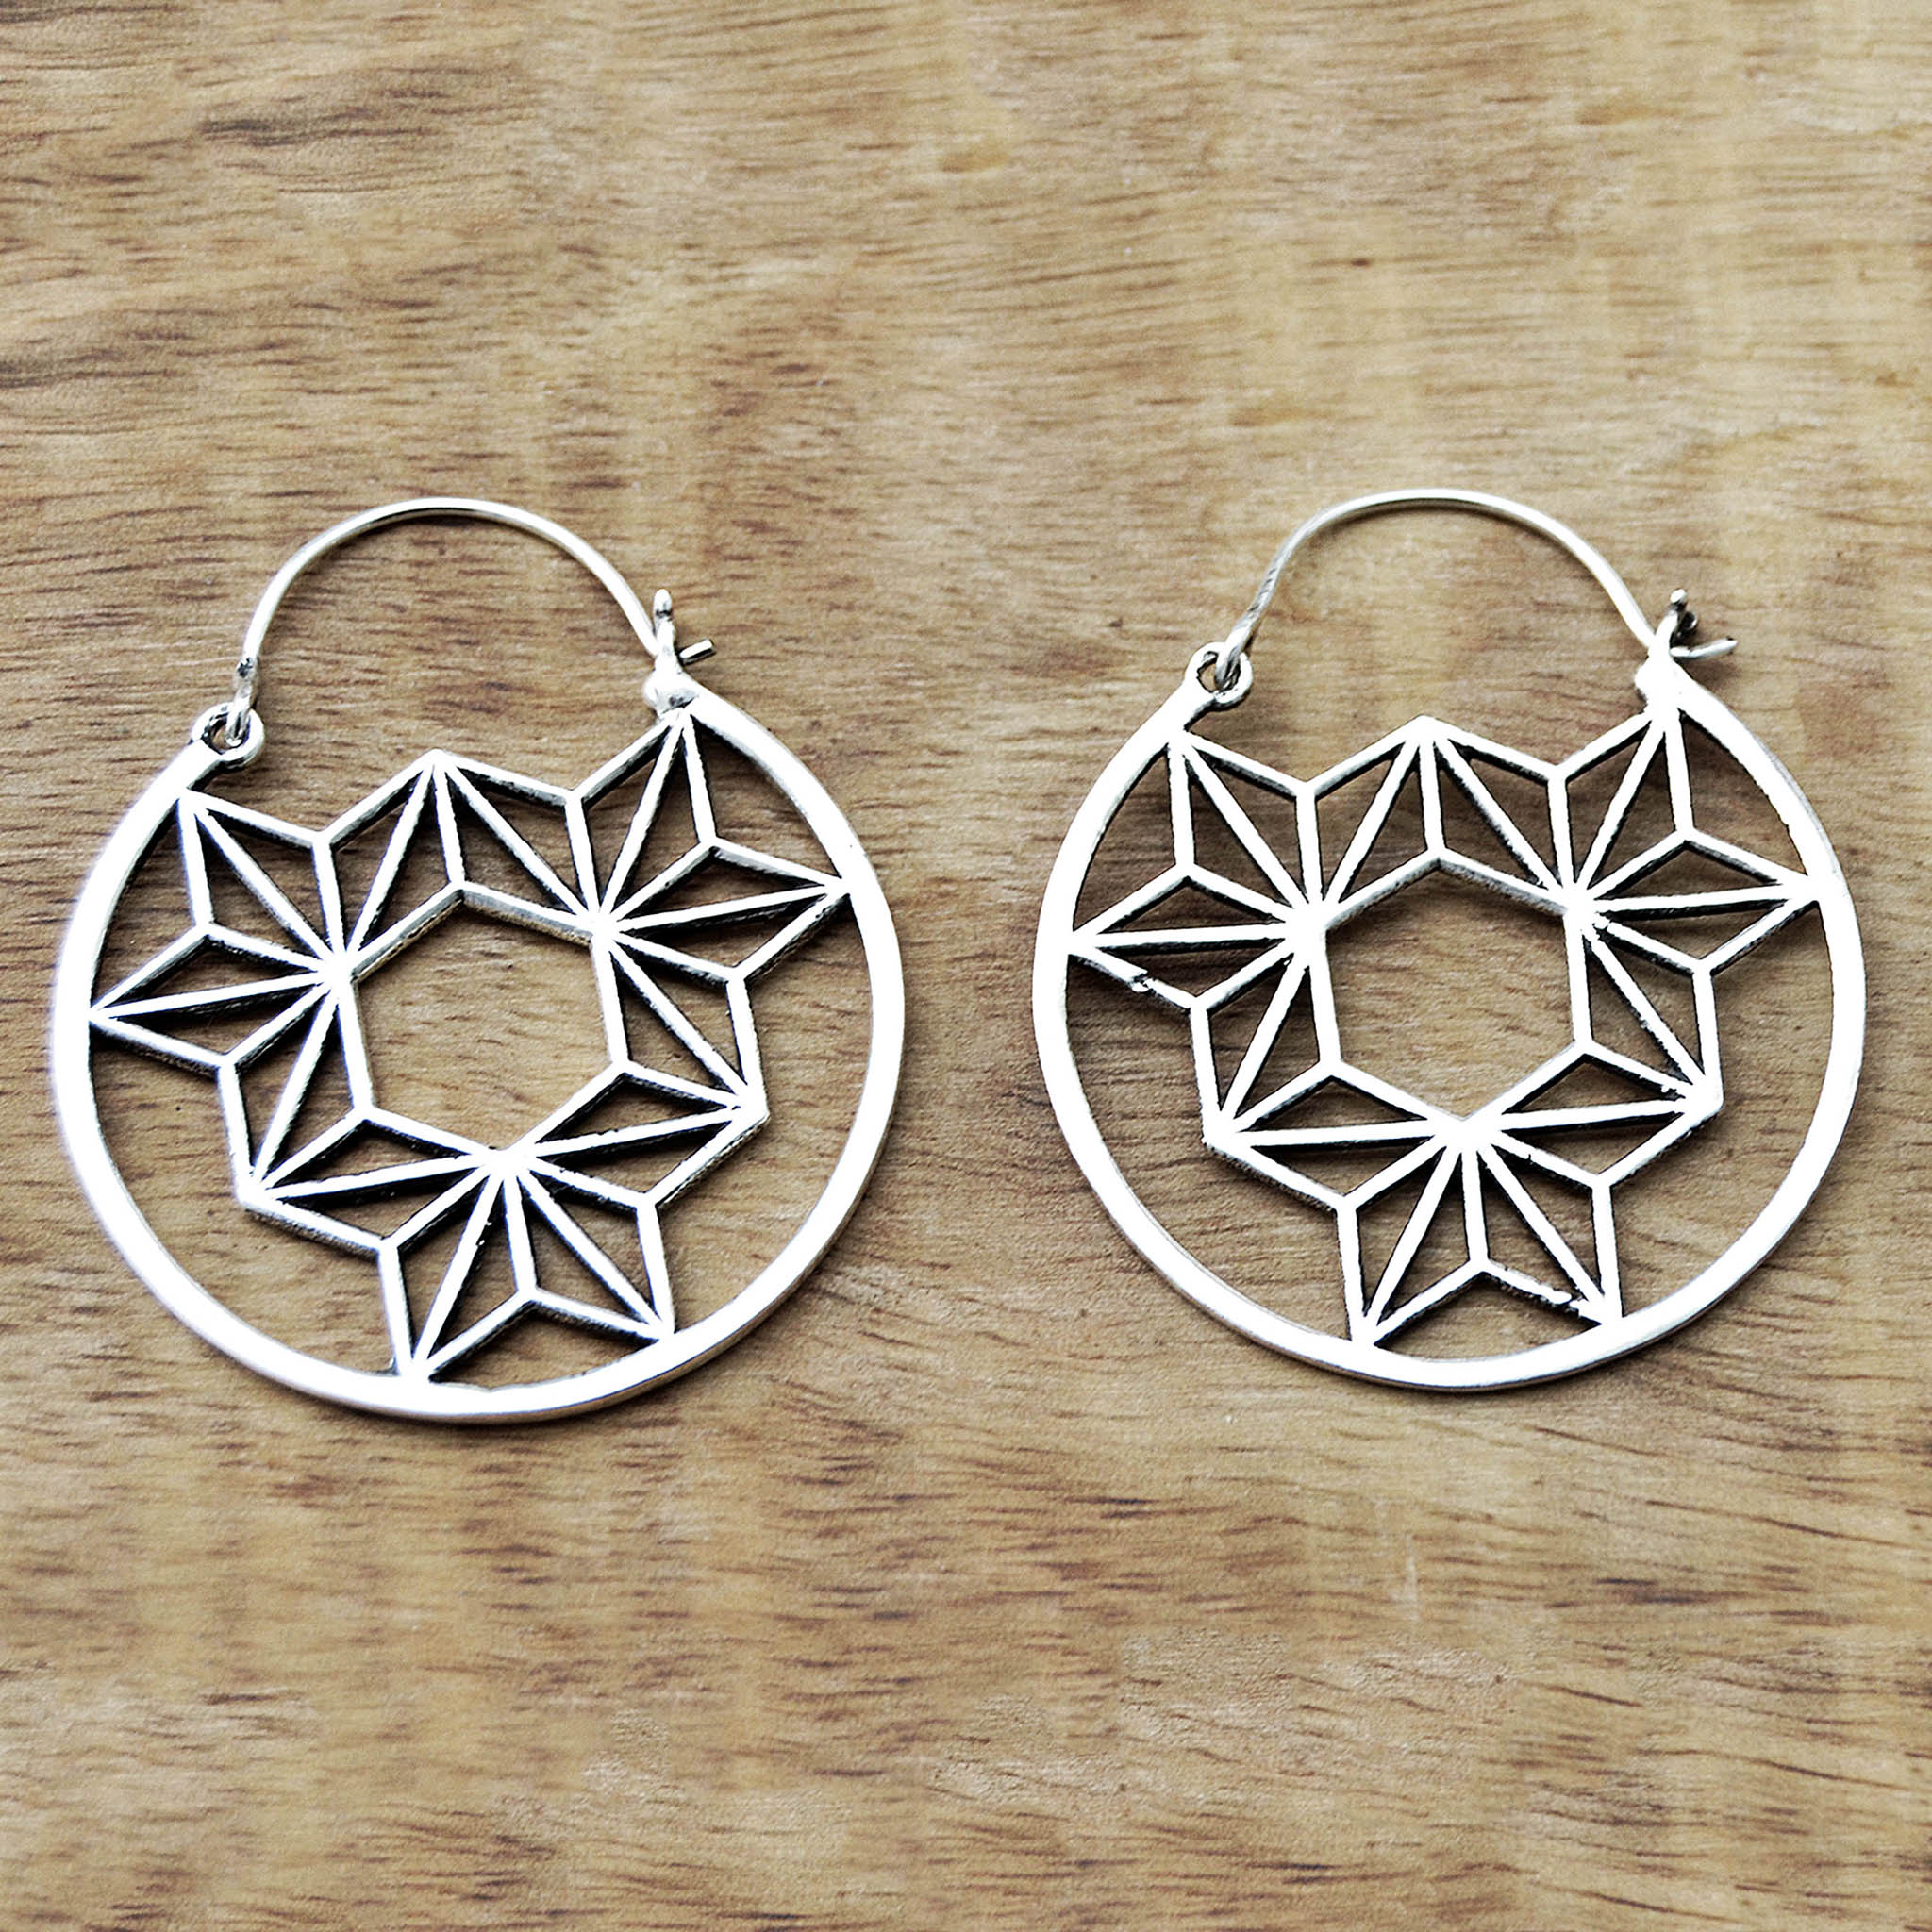 Geometric mandala earrings